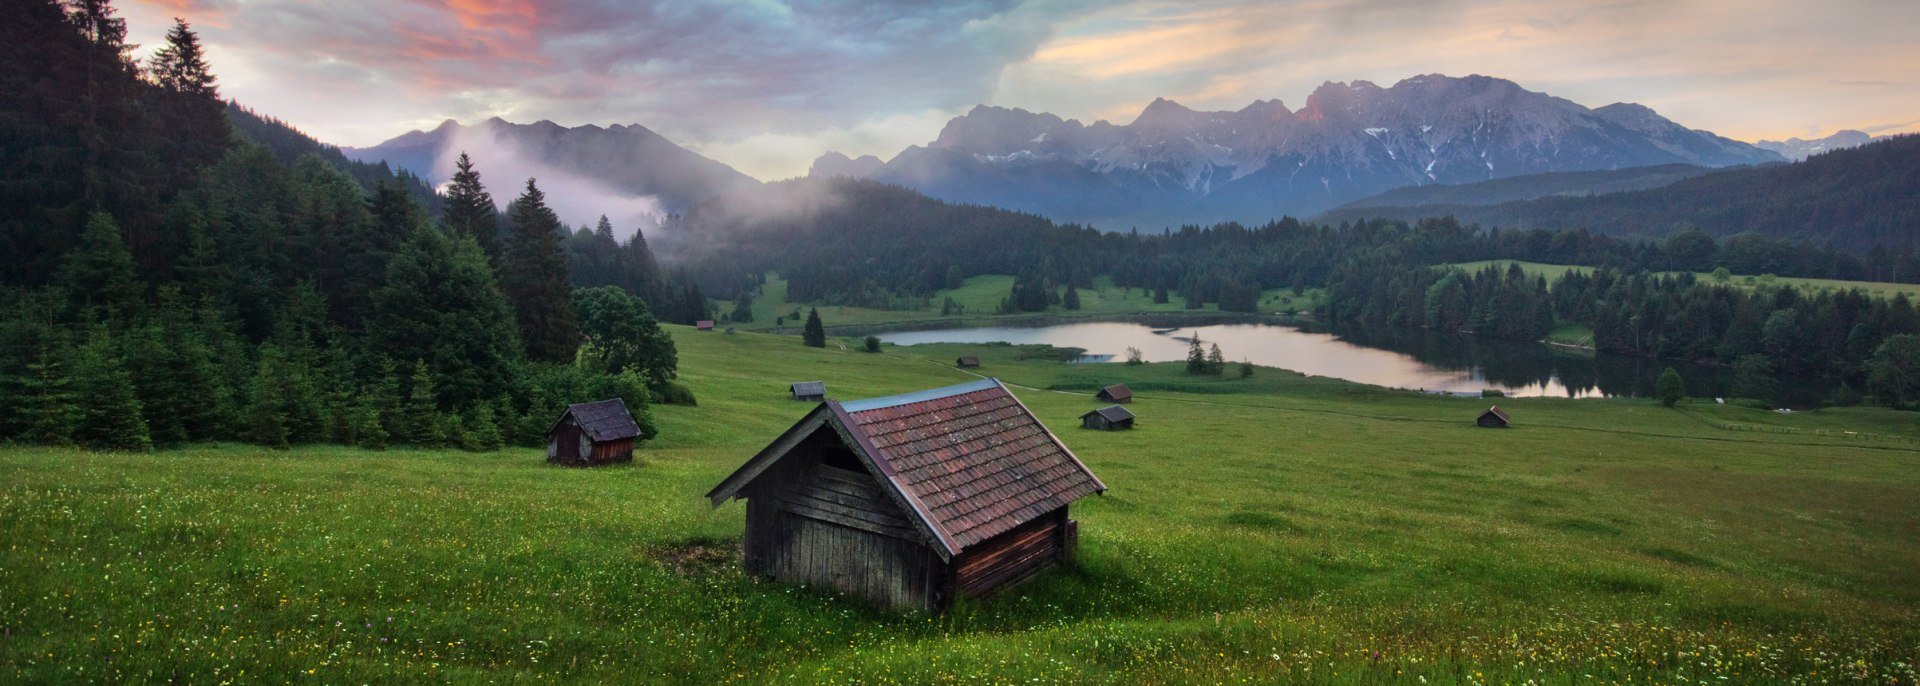 Einmalige Einblicke in einen bewölken Tag zwischen Karwendel, Soiern und Wetterstein., © Alpenwelt Karwendel | Maximilian Ziegler